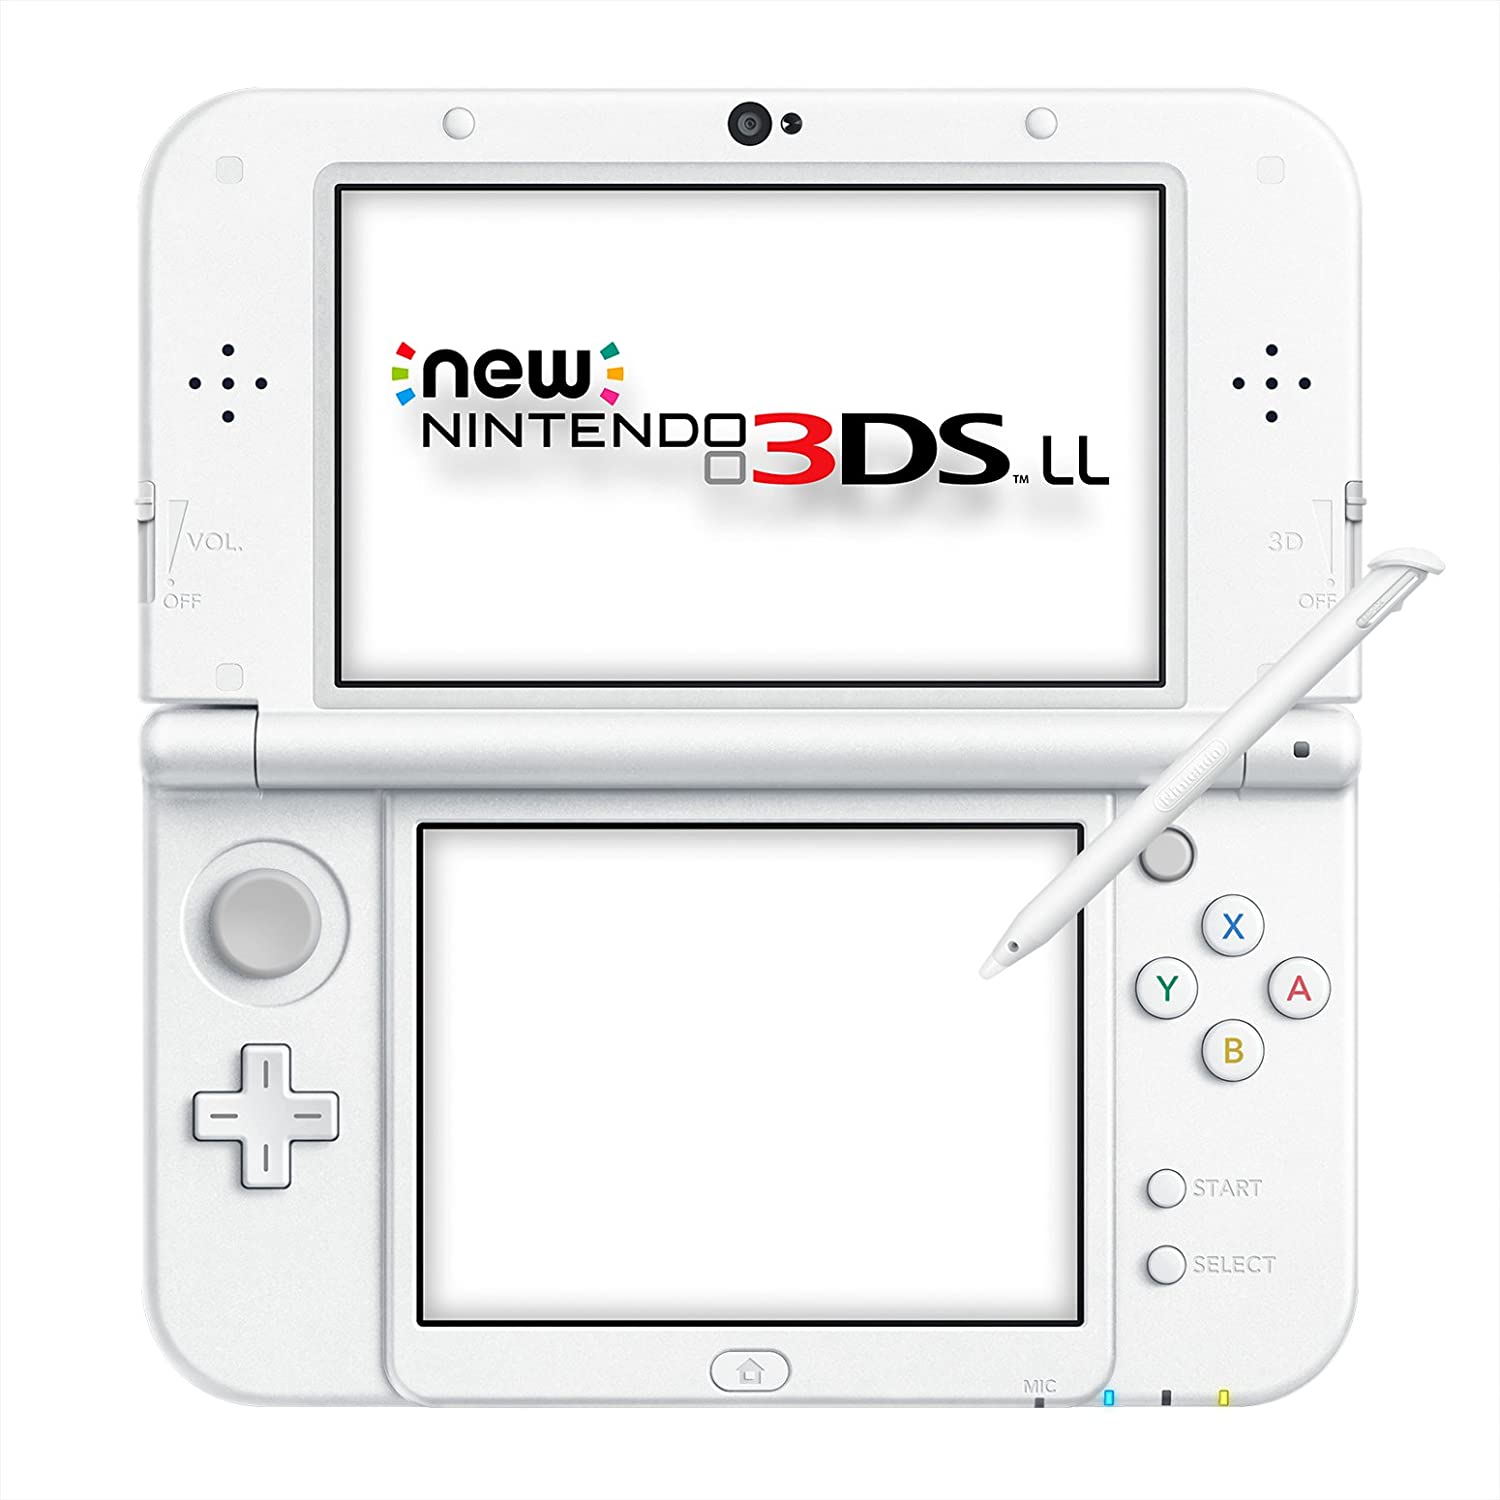 Finde sig i endelse Optimistisk Nintendo New 3DS XL | inkl. Spil | hvid | Super Mario 3D Land (DE Version)  | 2300 kr. | Nu med en 30-dages prøveperiode